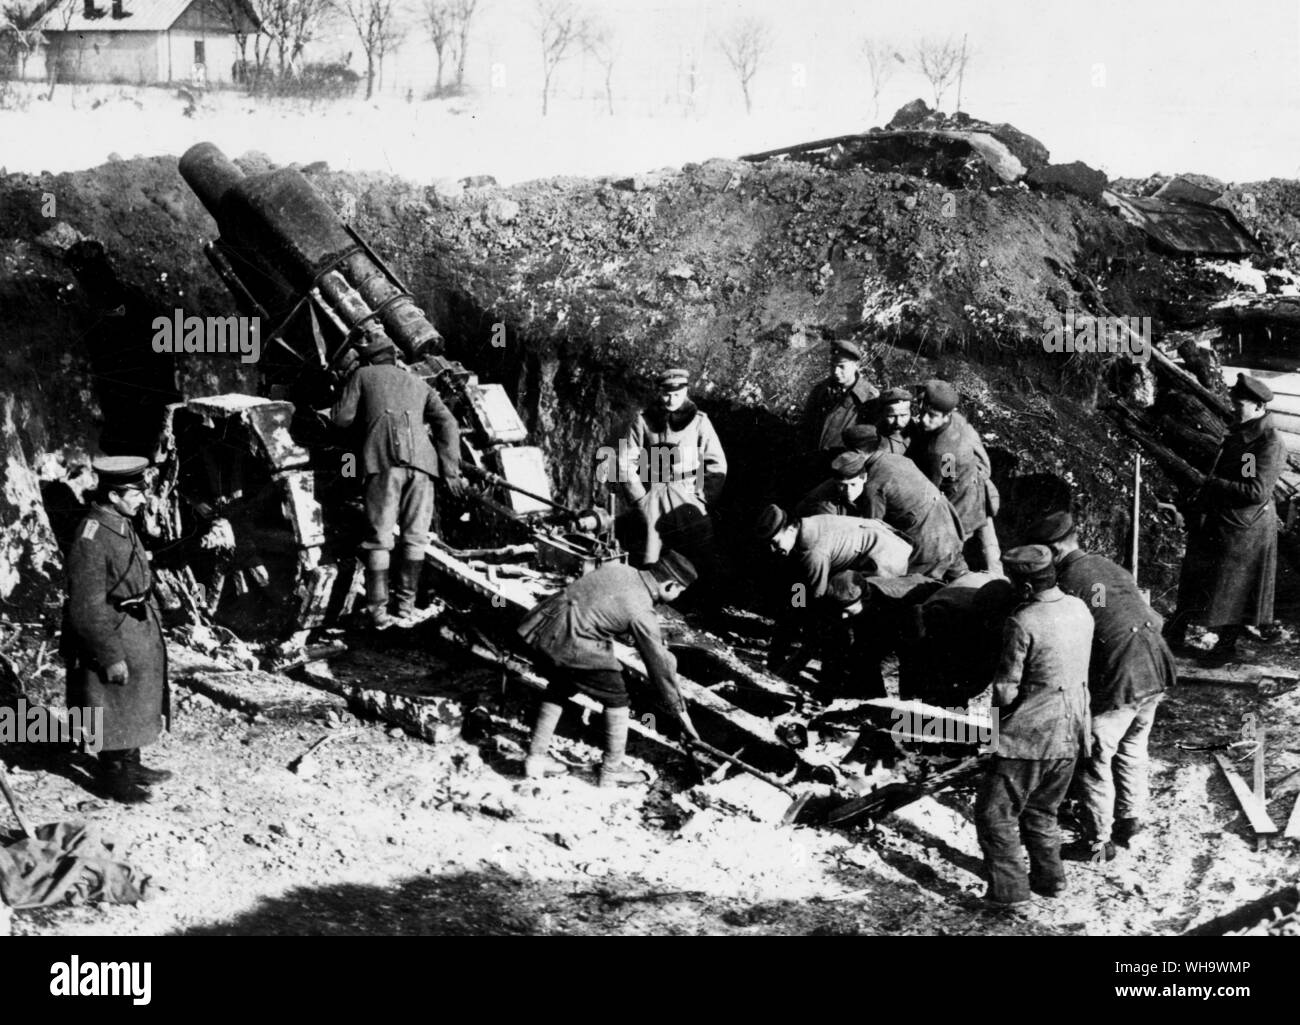 WW1/rumänischen Front: Vorauszahlung auf dem Sereth. Deutsch 21 cm Howitzer gun in Aktion, Januar 1917. Stockfoto